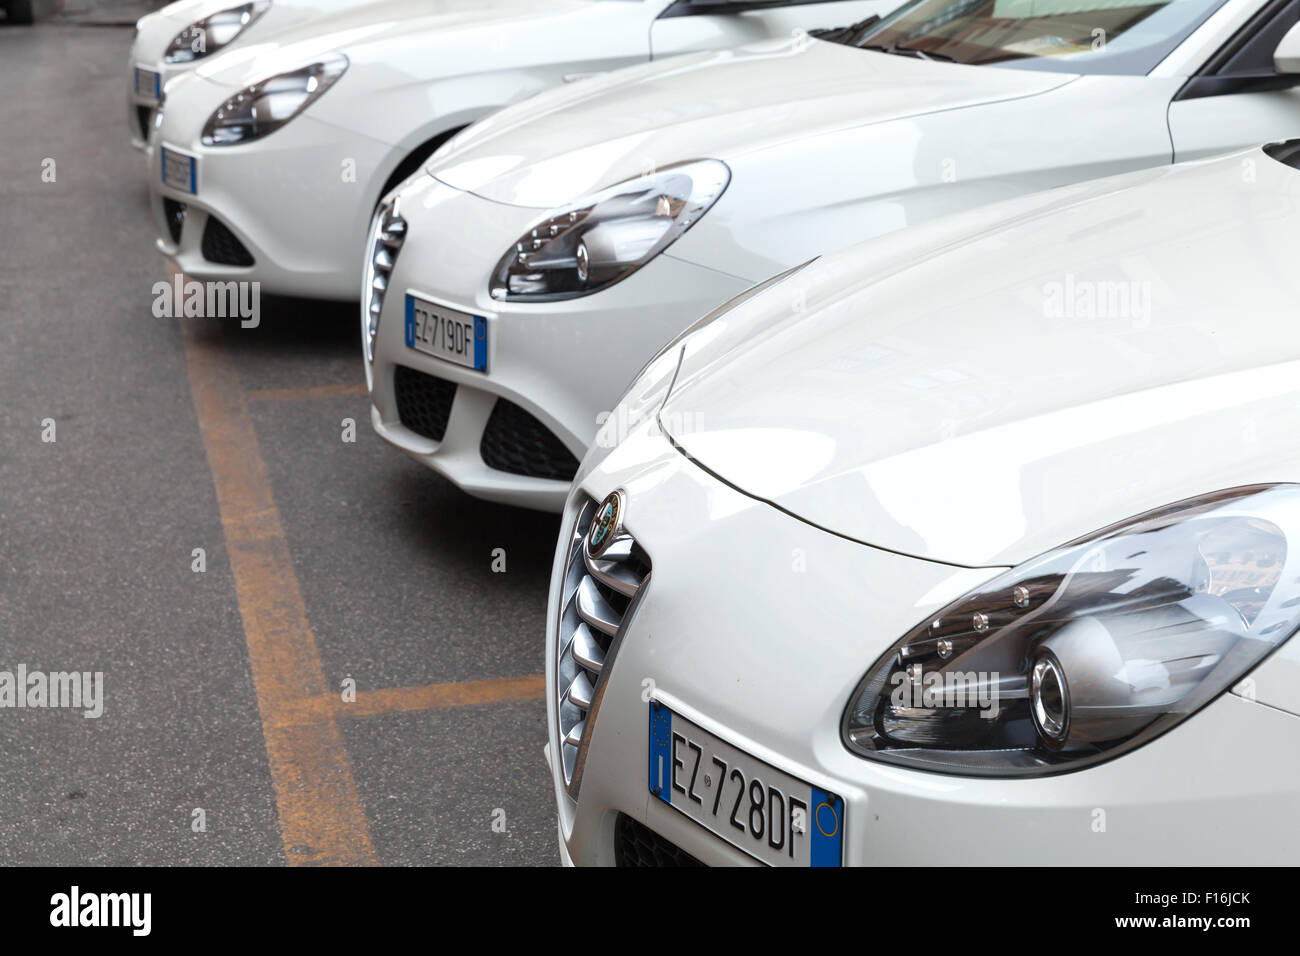 Rome, Italie - 7 août 2015 : Blanc Alfa Romeo Giulietta Type 940 voitures est garée dans une rangée Banque D'Images